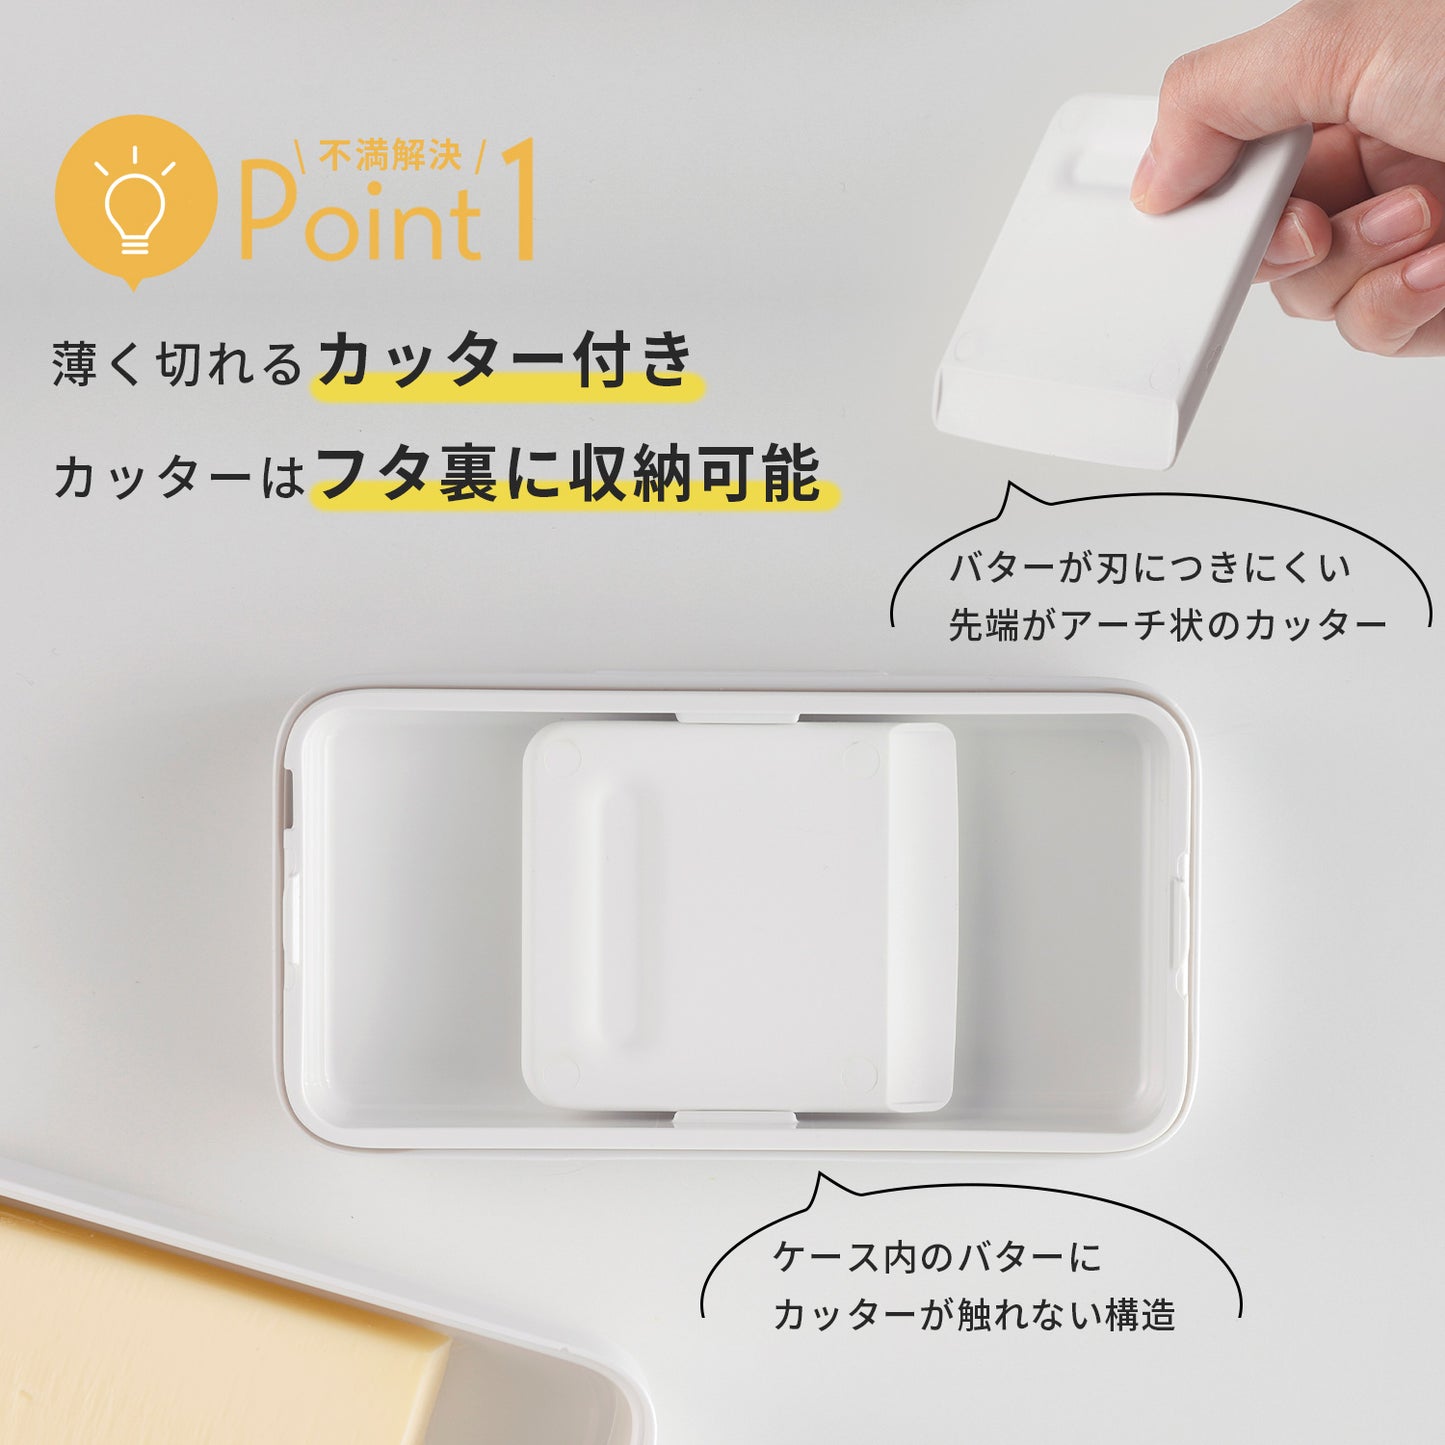 【預購】日本進口 Marna 牛油切片密封收納盒 (適用於200克)